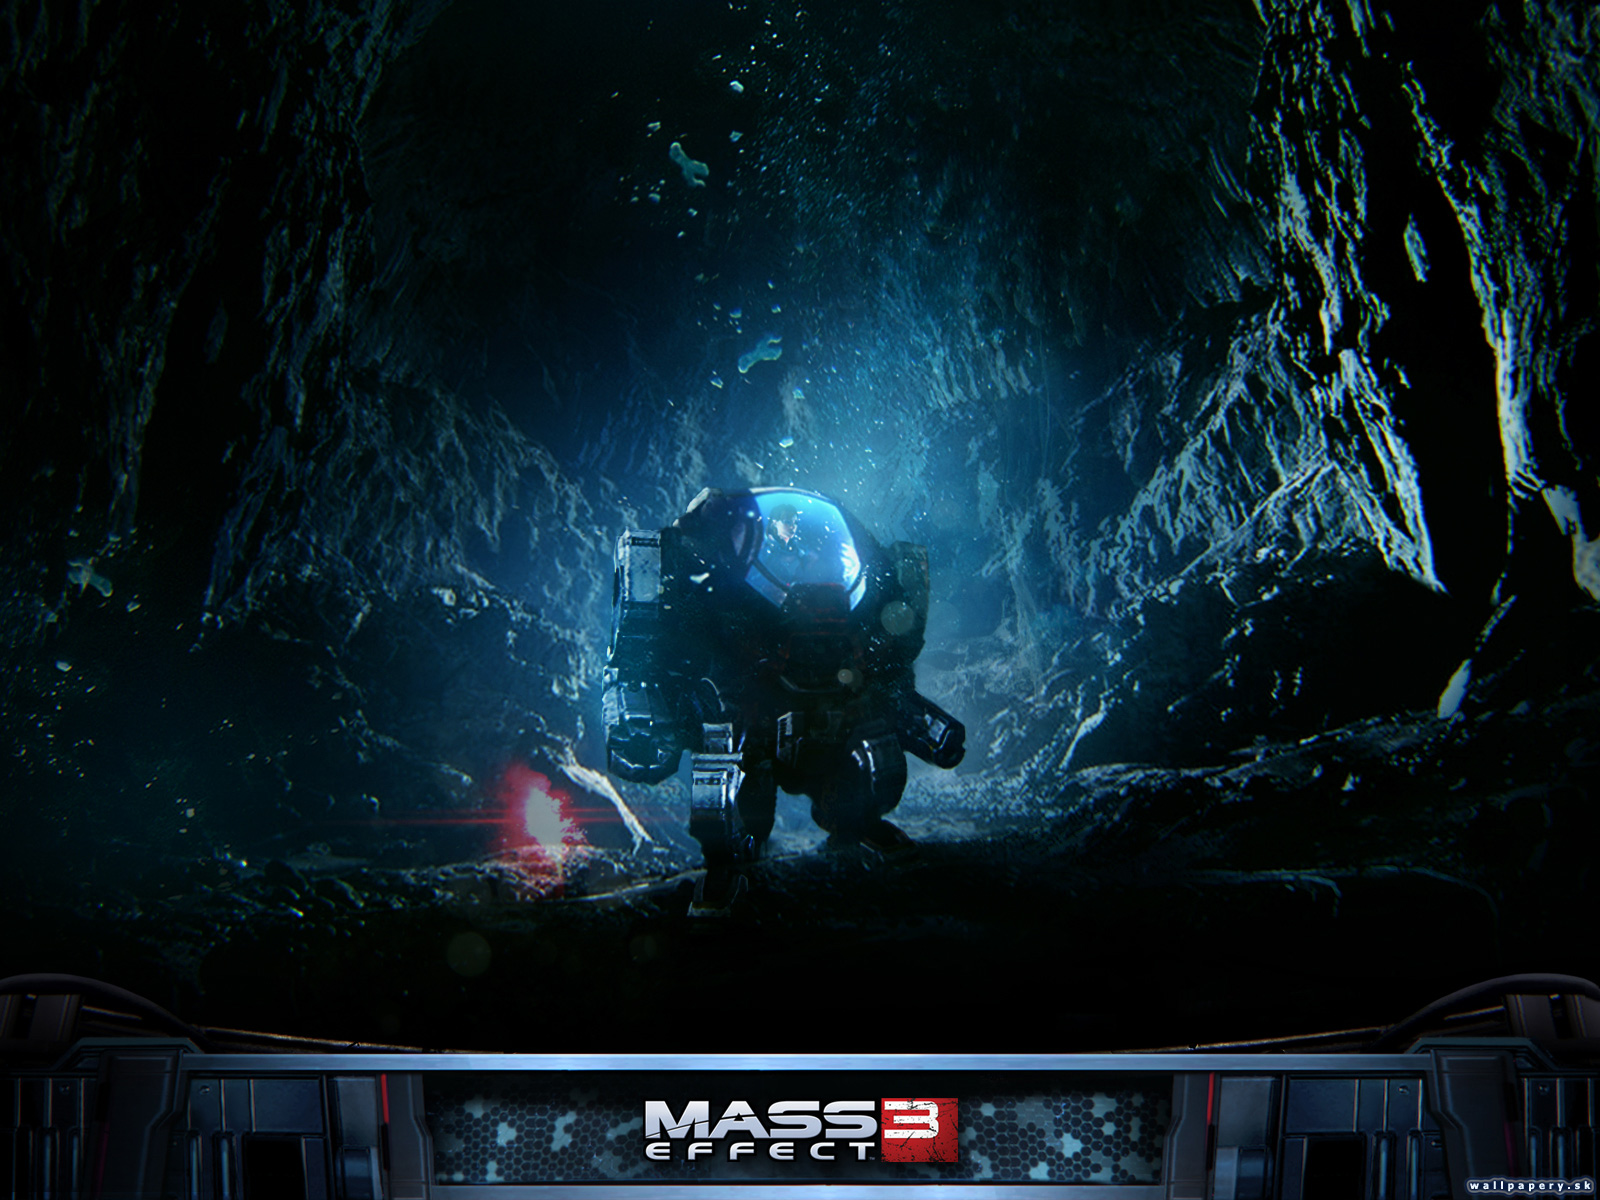 Mass Effect 3: Leviathan - wallpaper 2